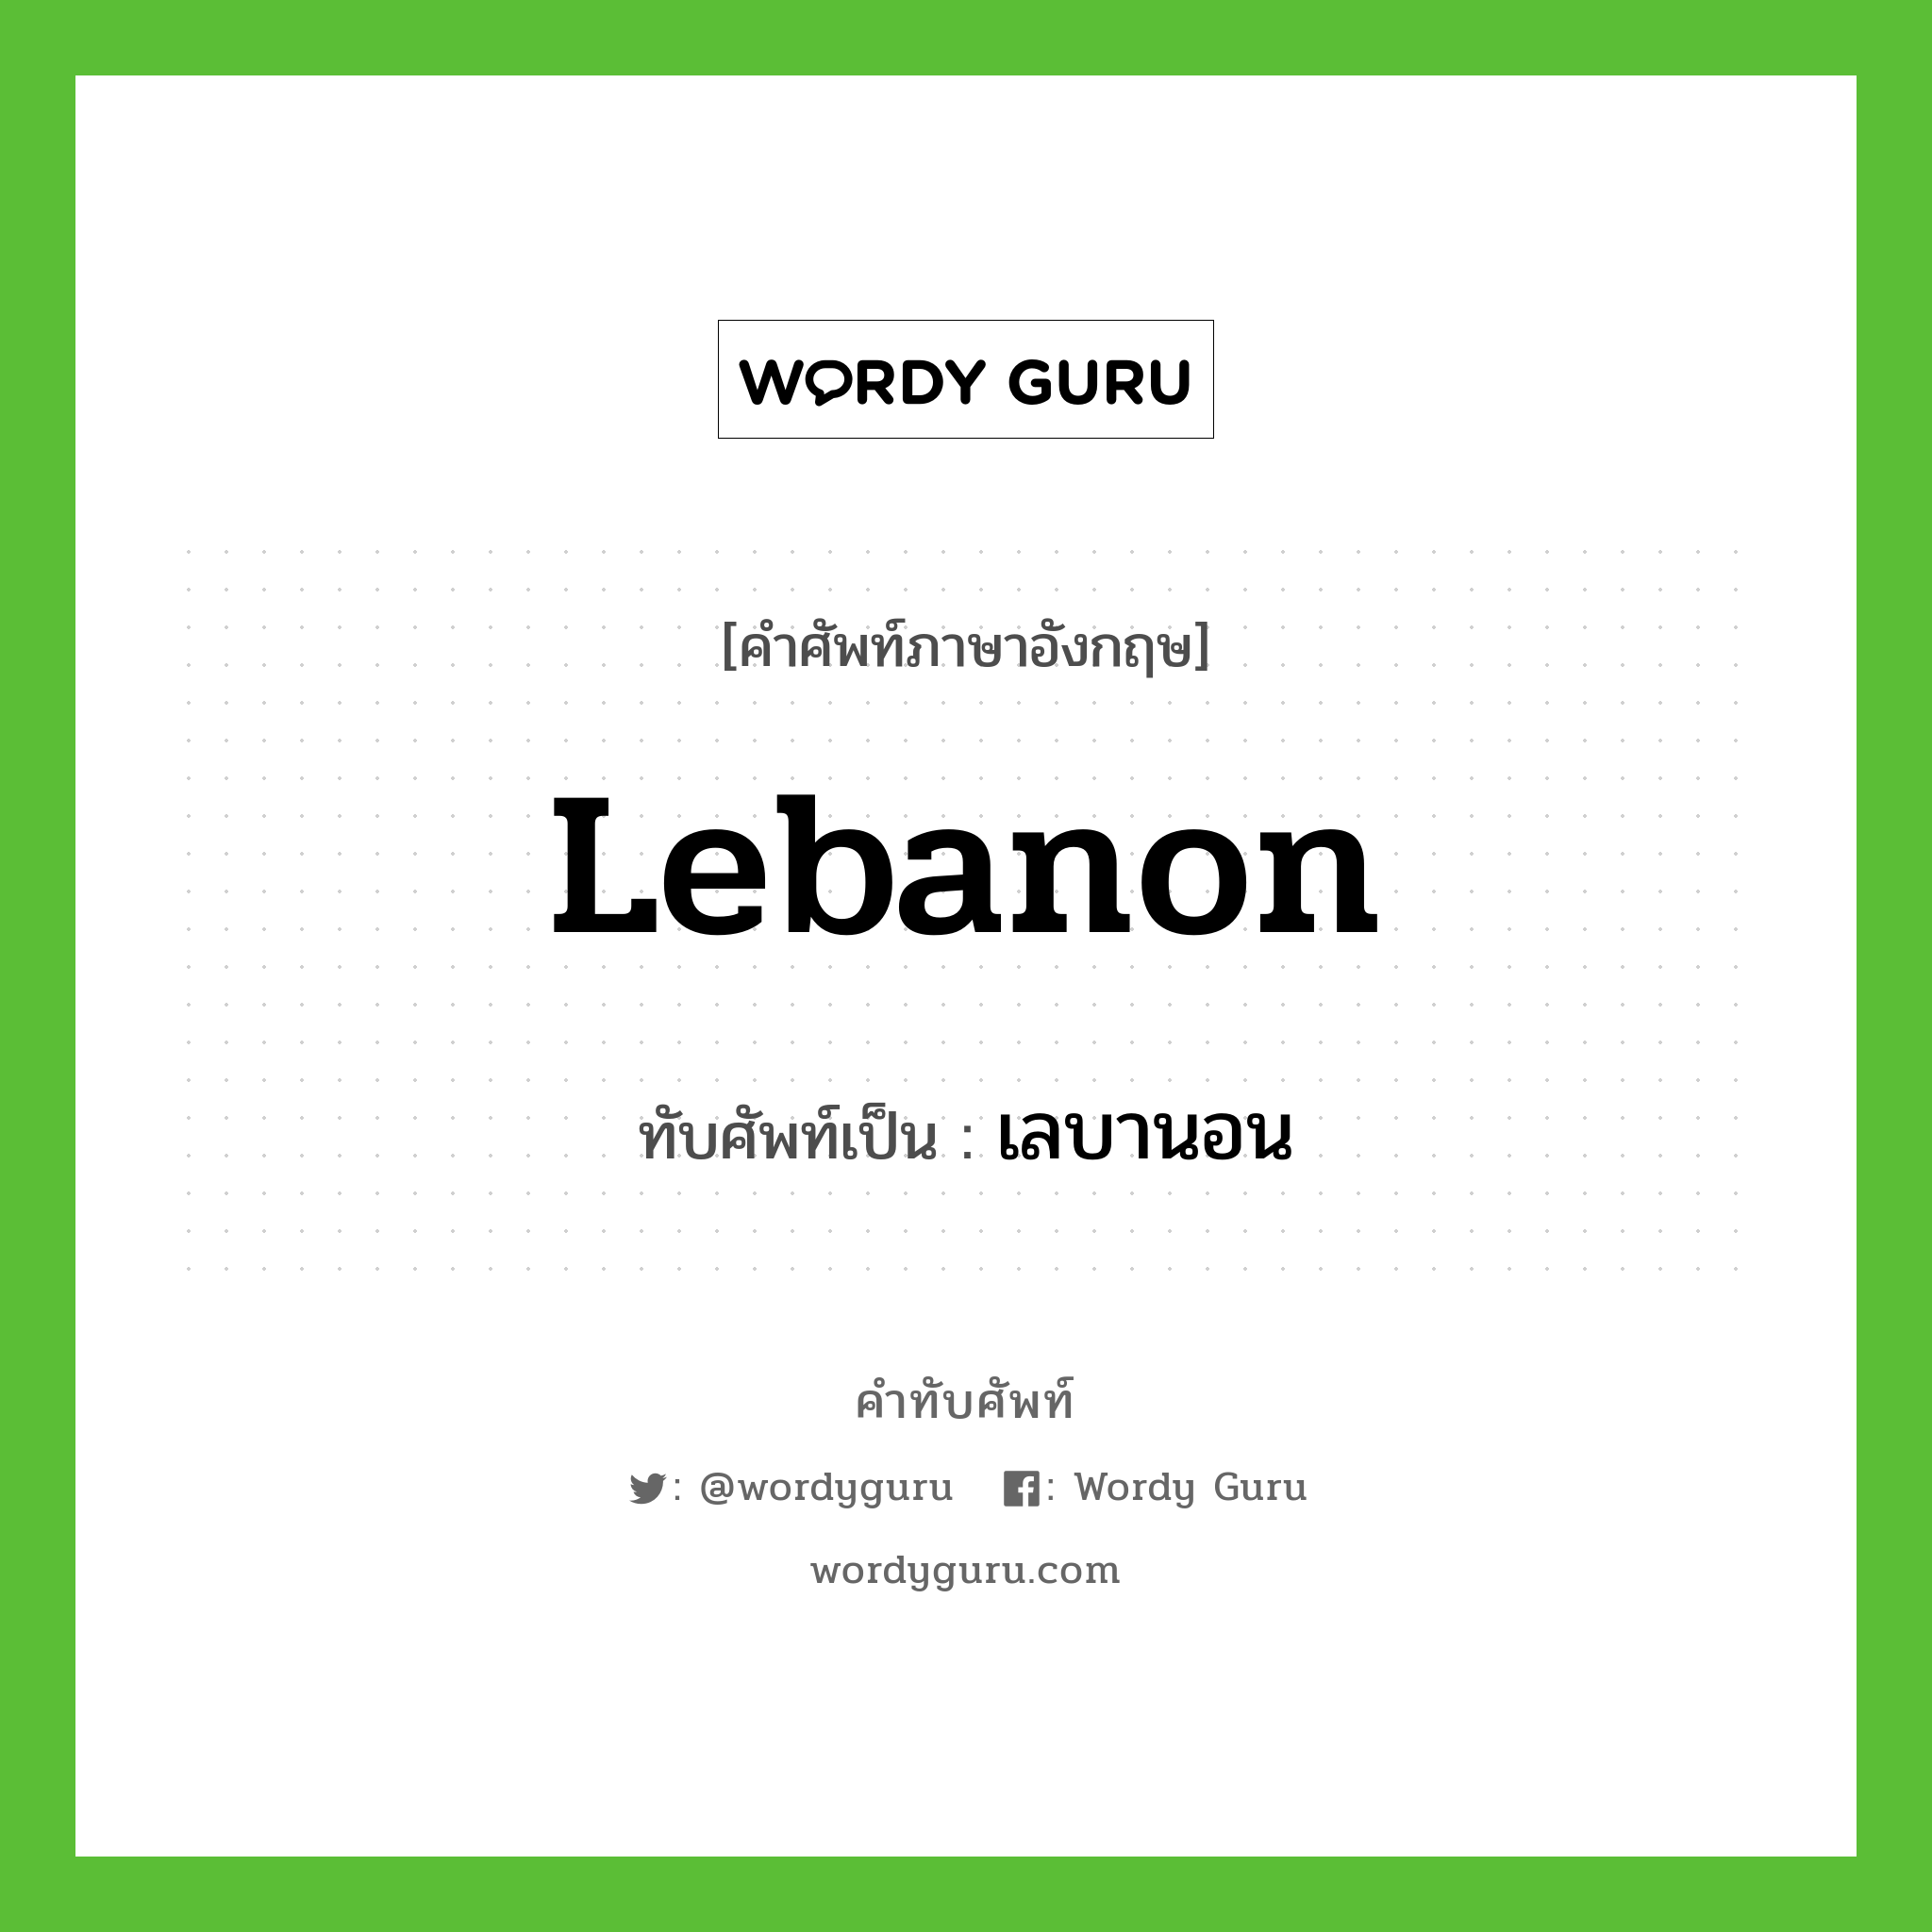 Lebanon เขียนเป็นคำไทยว่าอะไร?, คำศัพท์ภาษาอังกฤษ Lebanon ทับศัพท์เป็น เลบานอน